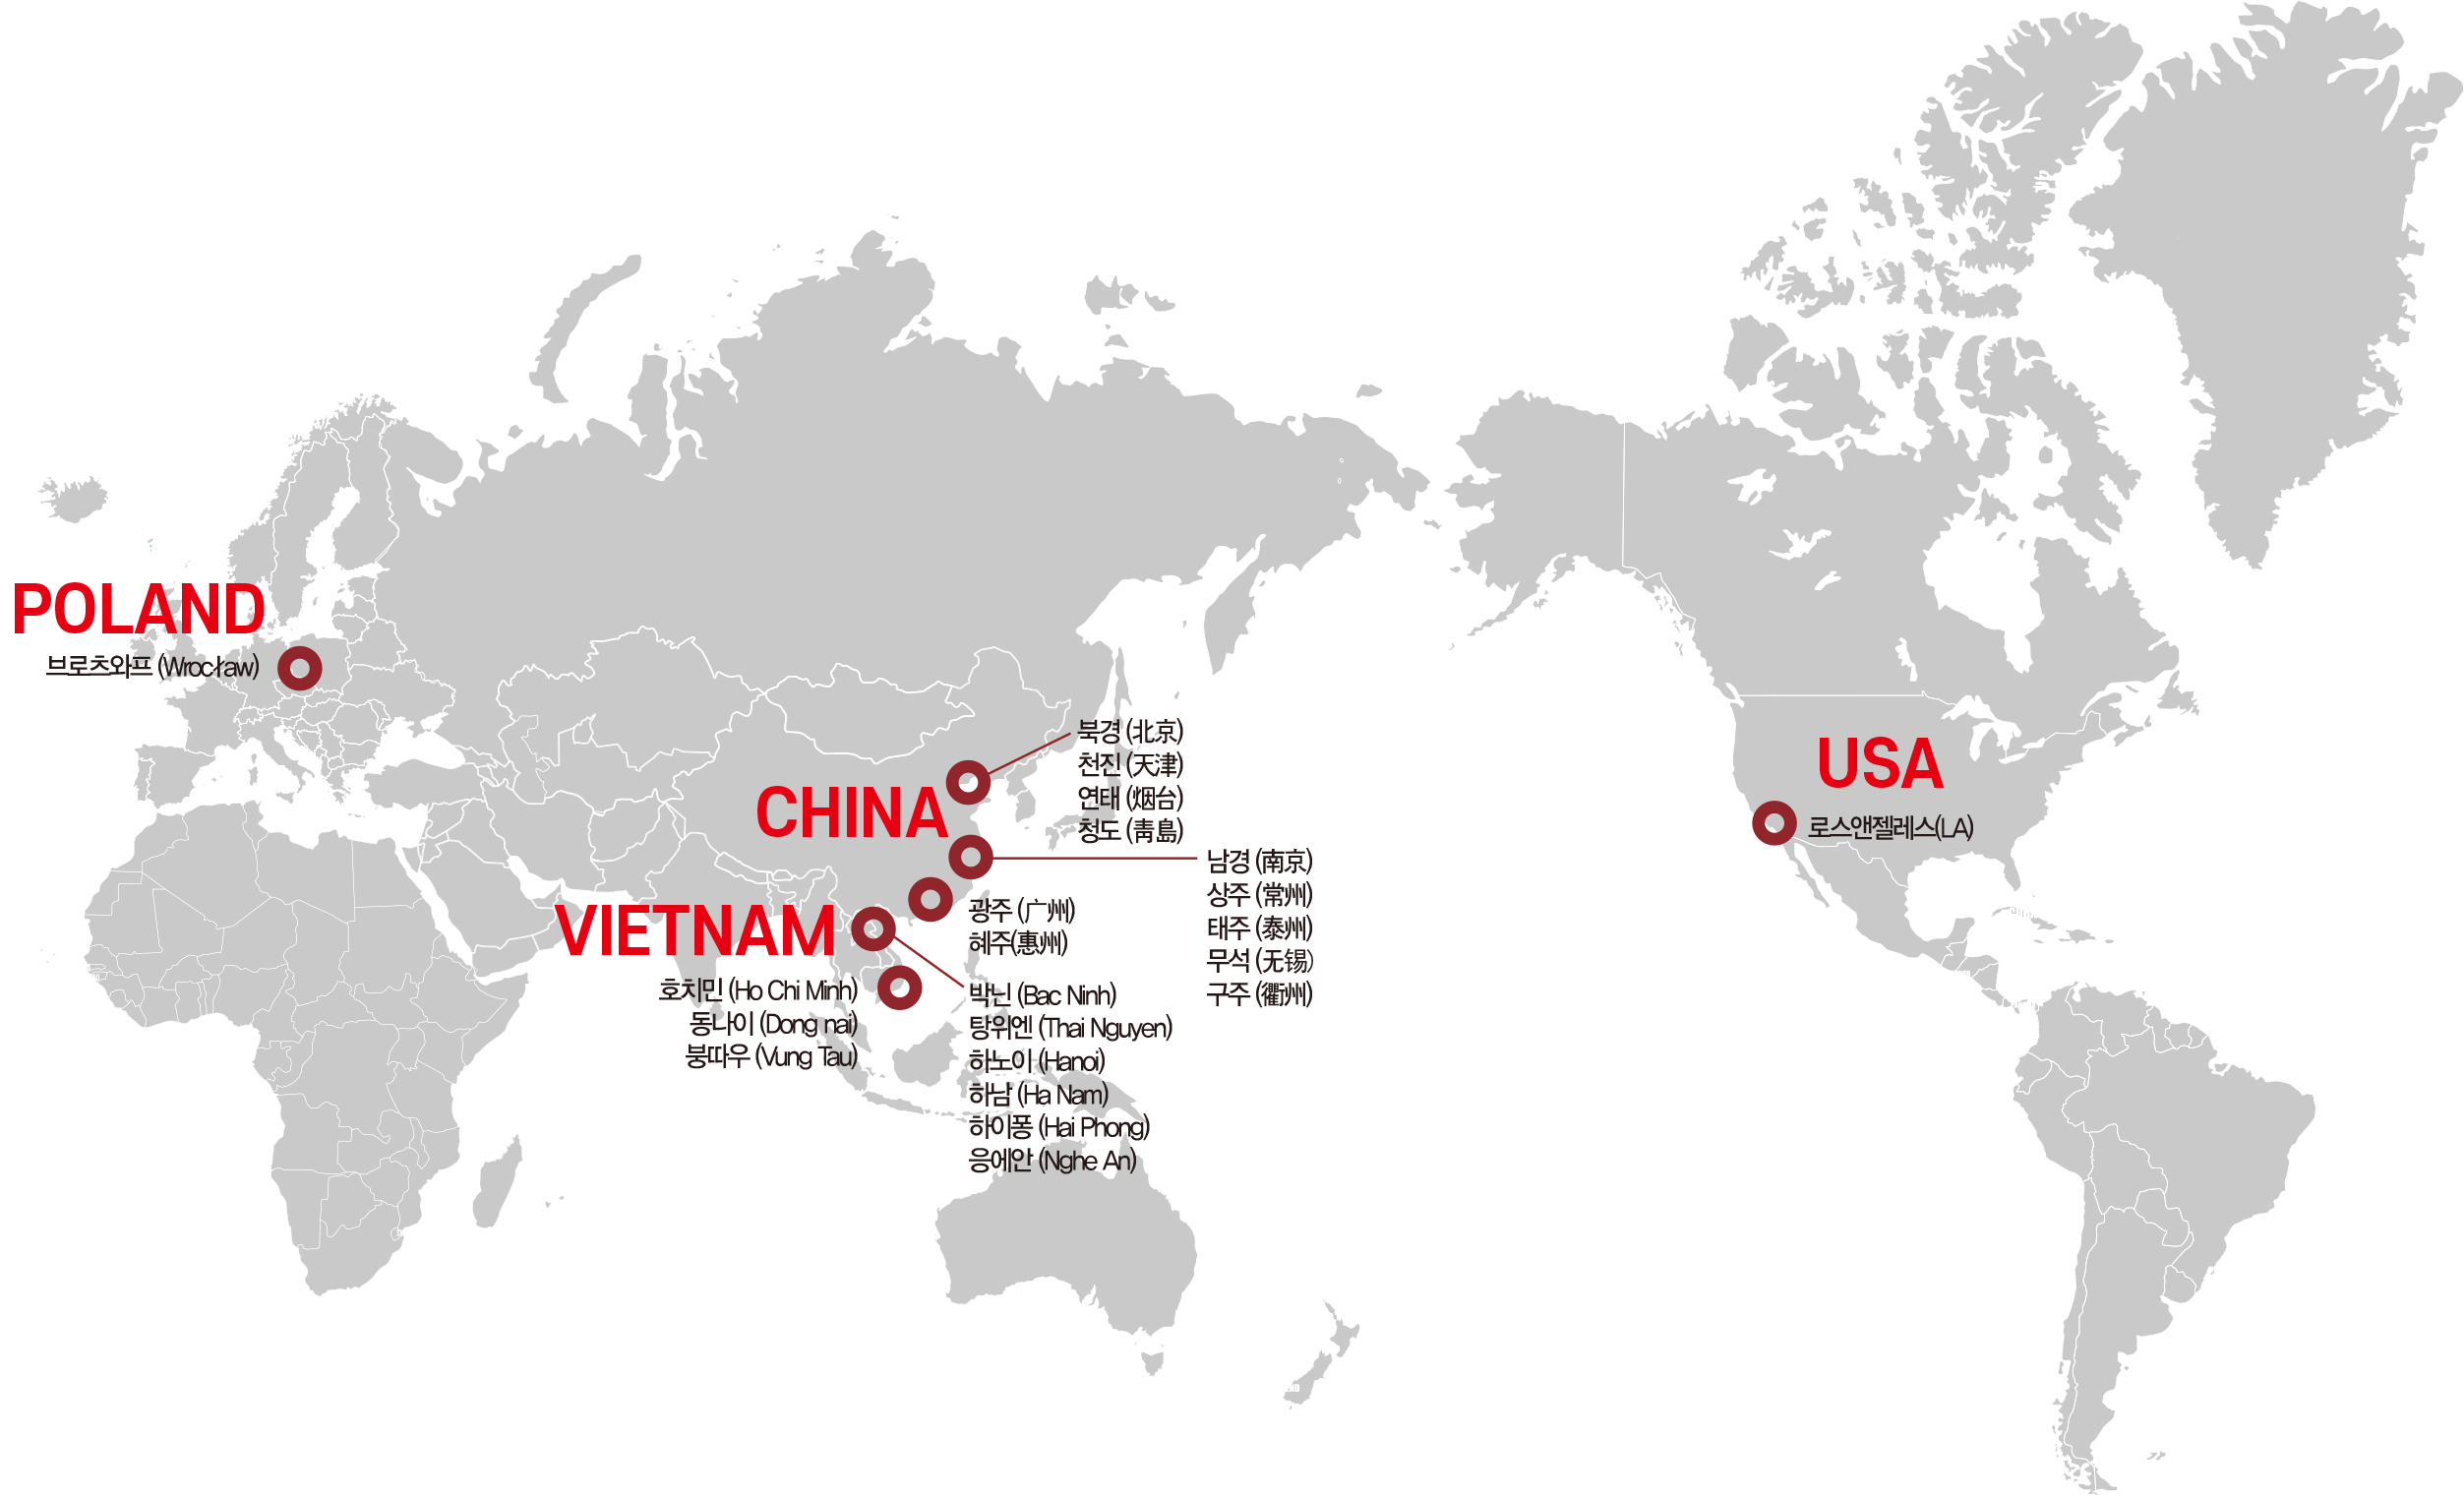 LA, Beijing, Yantai, Tianjin, Qingdao, Nanjing, Guangzhou, Huizhou, Hải Phòng, Ho Chi Minh City